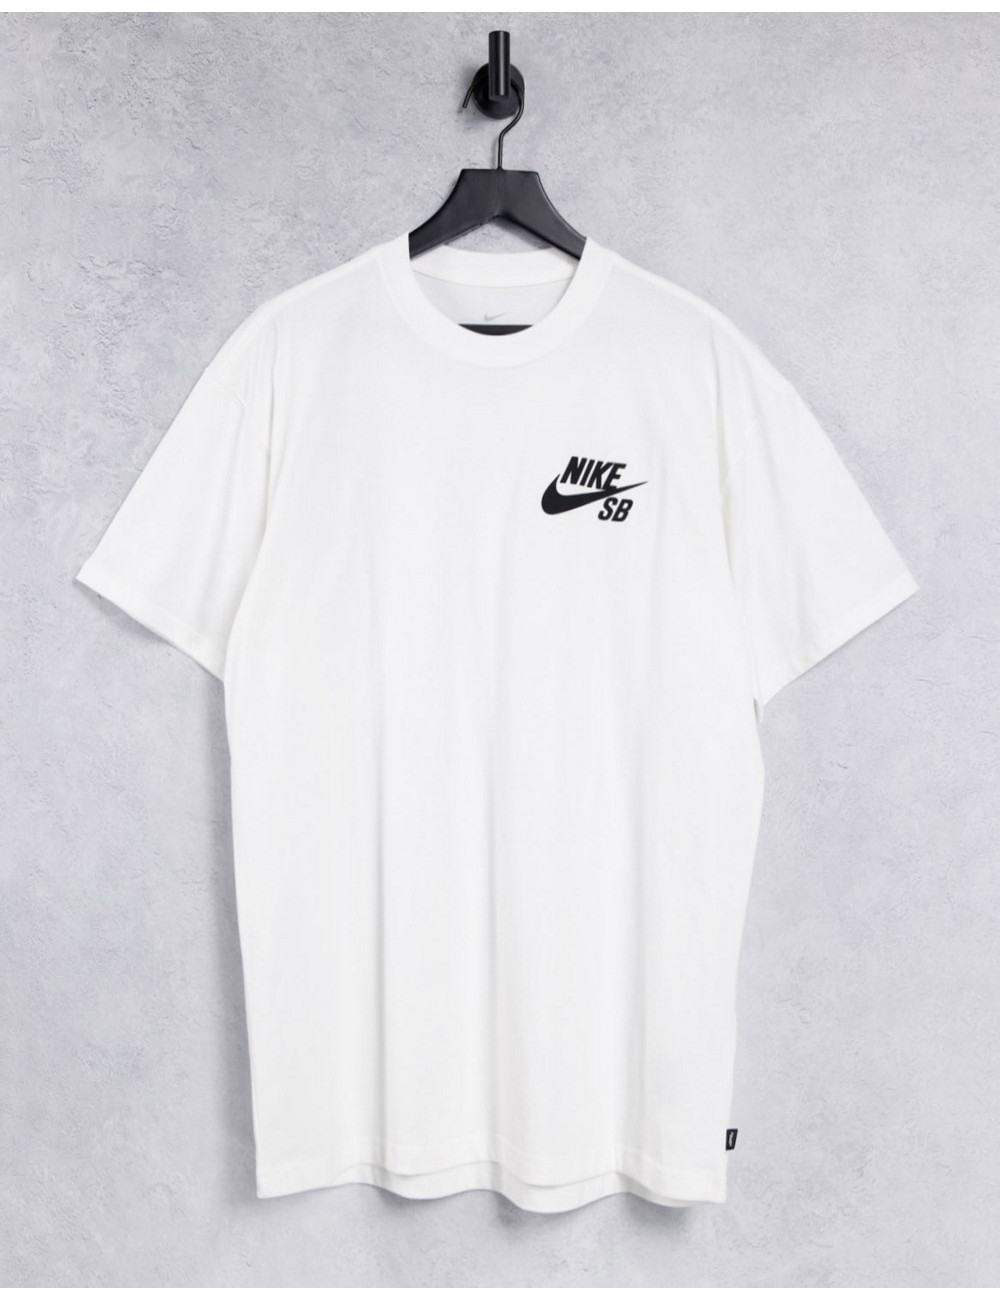 Nike SB logo t-shirt in white